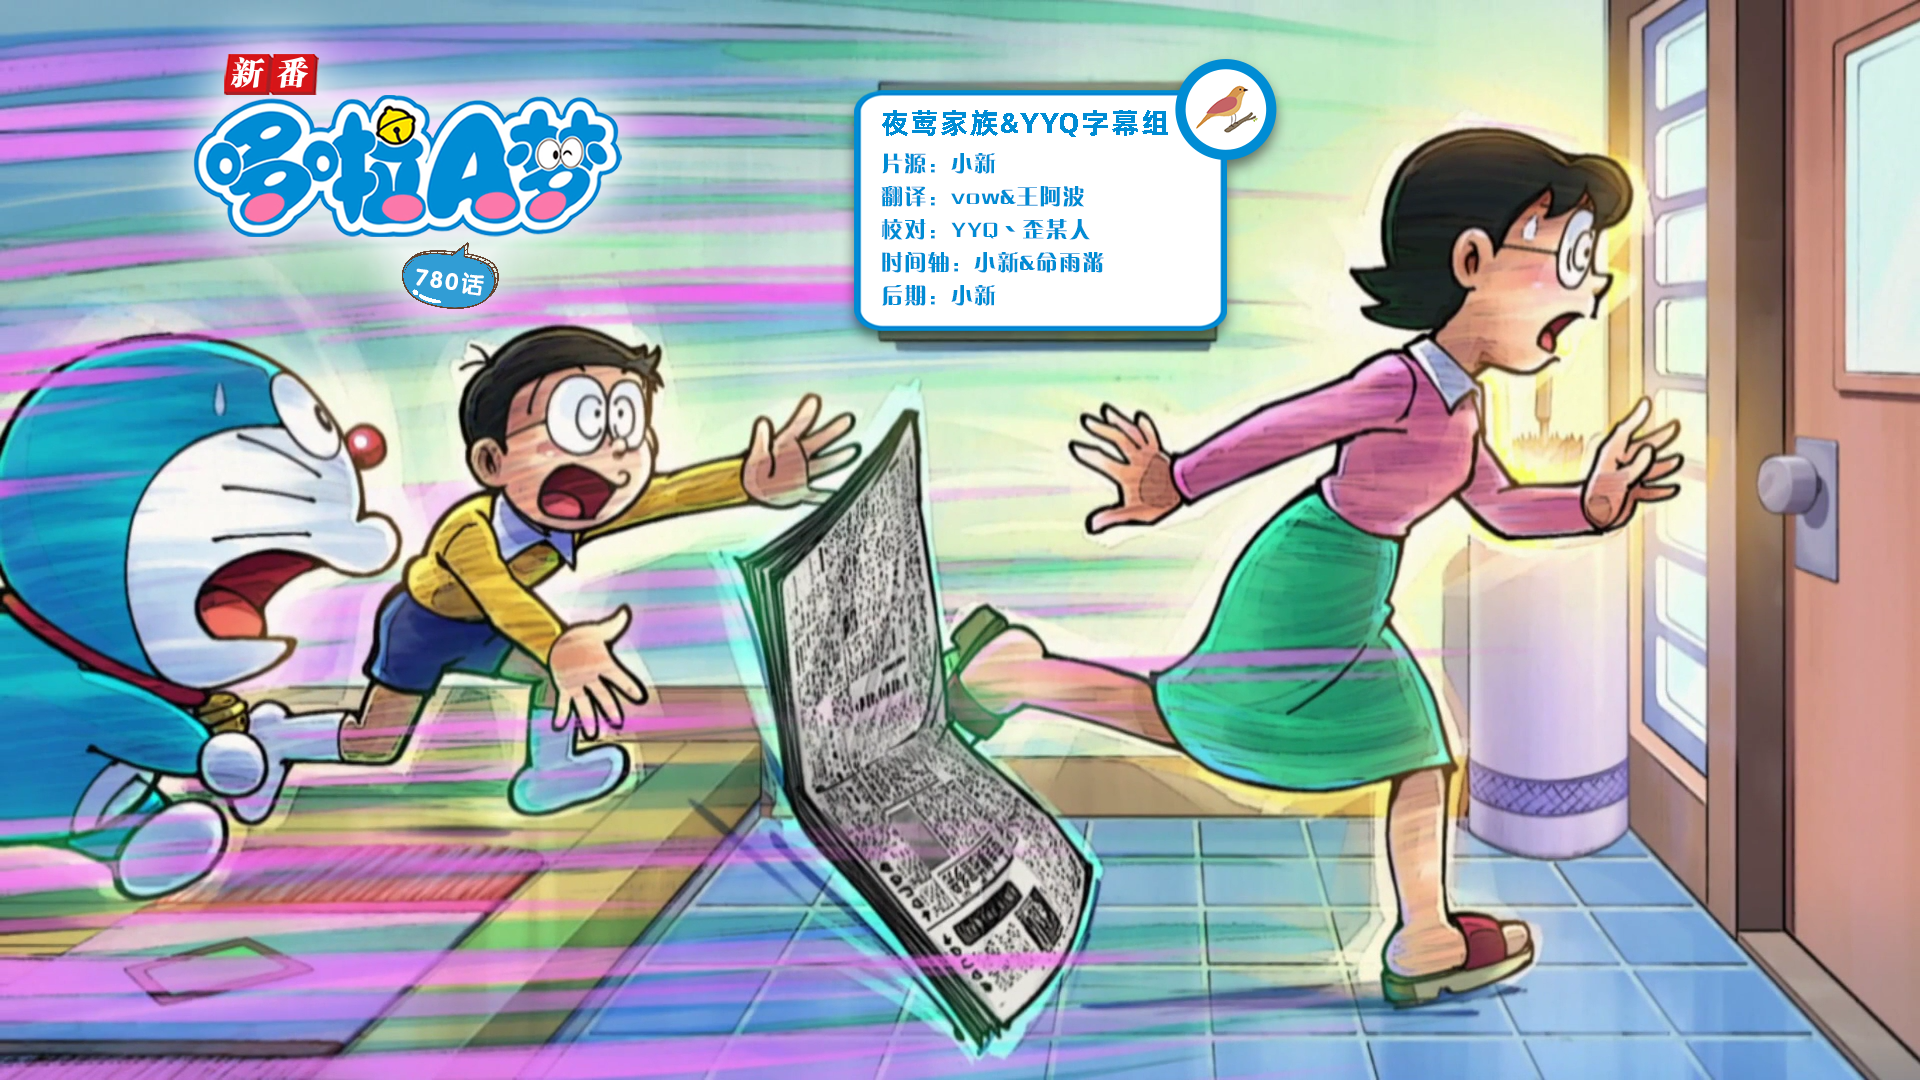 [夜莺家族&YYQ字幕组]New Doraemon 哆啦A梦新番[780][2023.10.14][AVC][1080P][GB_JP]插图icecomic动漫-云之彼端,约定的地方(´･ᴗ･`)2